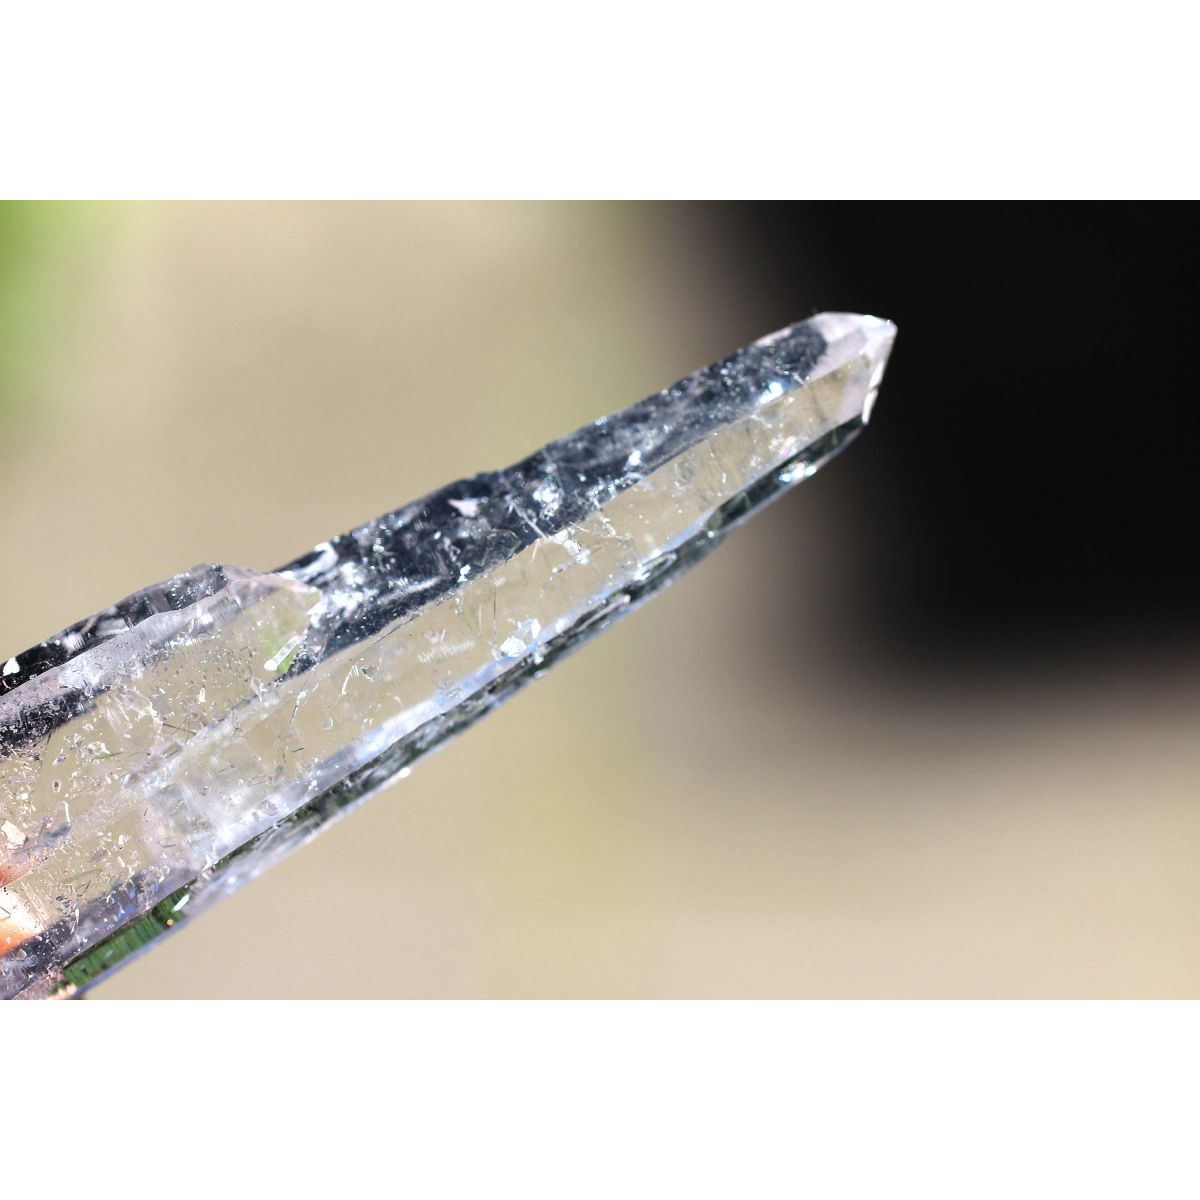 Bergkristall - Tantrische Zwillinge - Zeitsprung - Energiekristall  ( göttliches Licht )